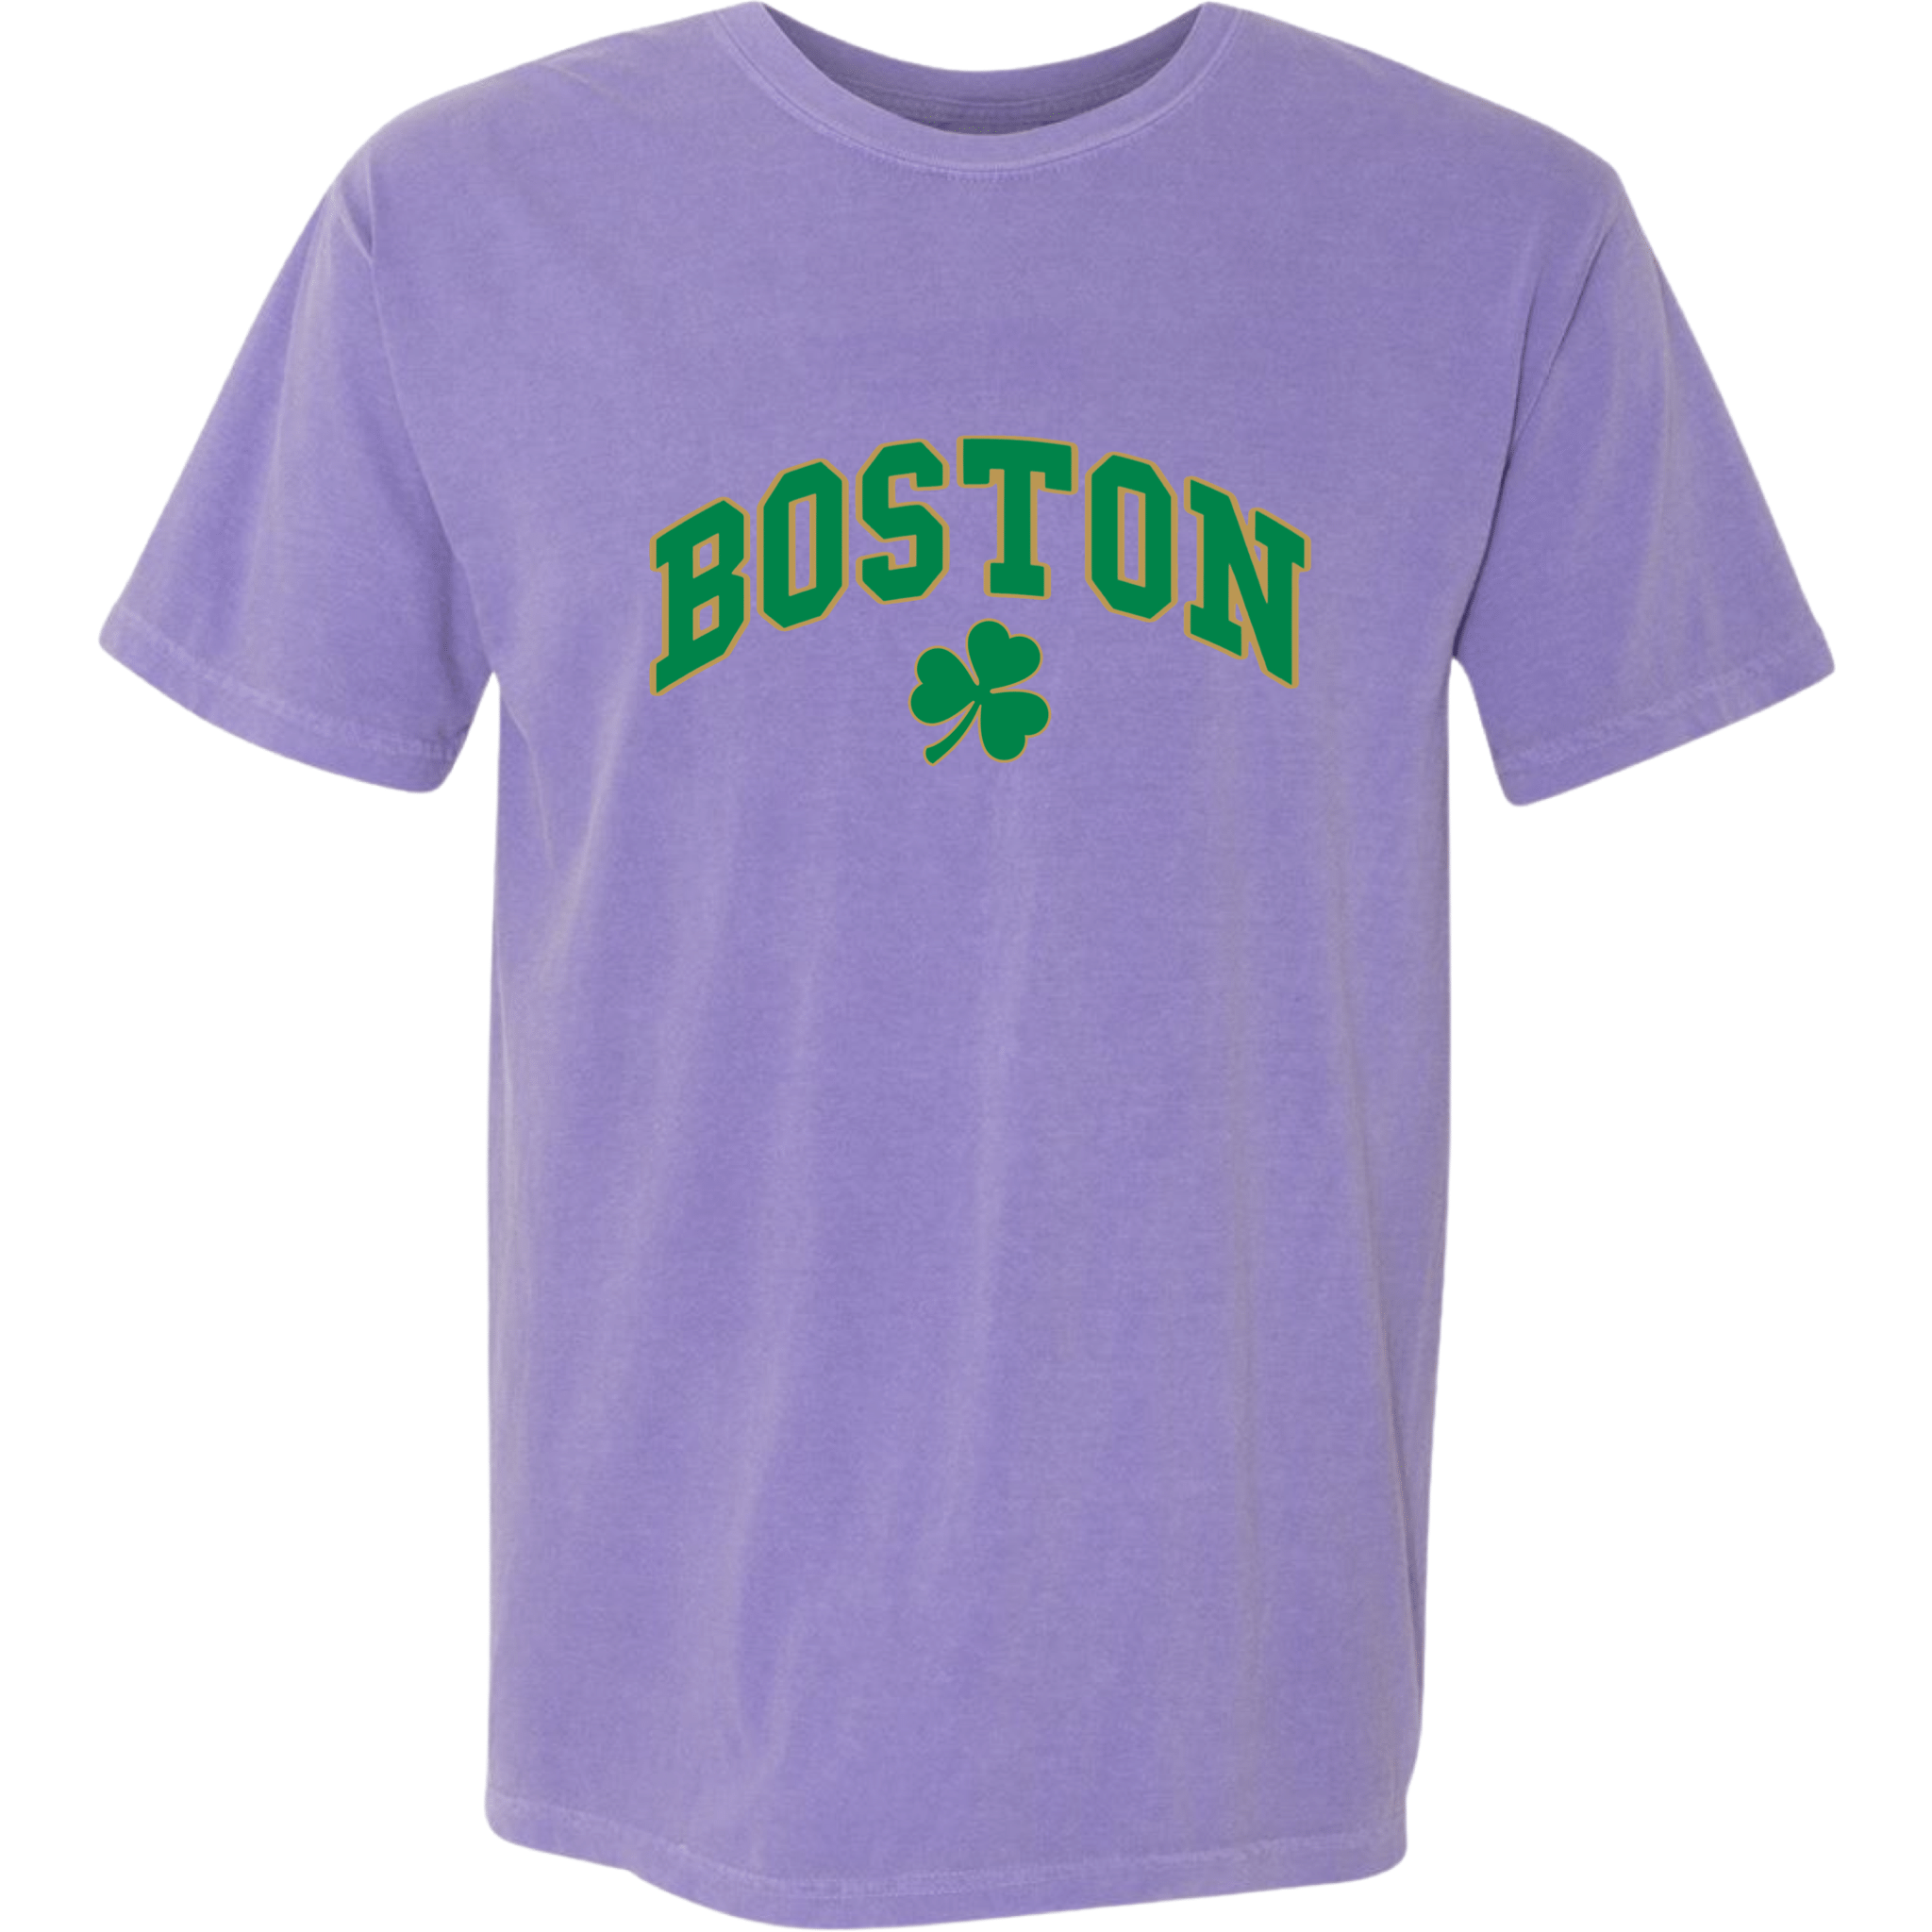 Boston Vintage Shamrock Comfort Colors T-Shirt, violet